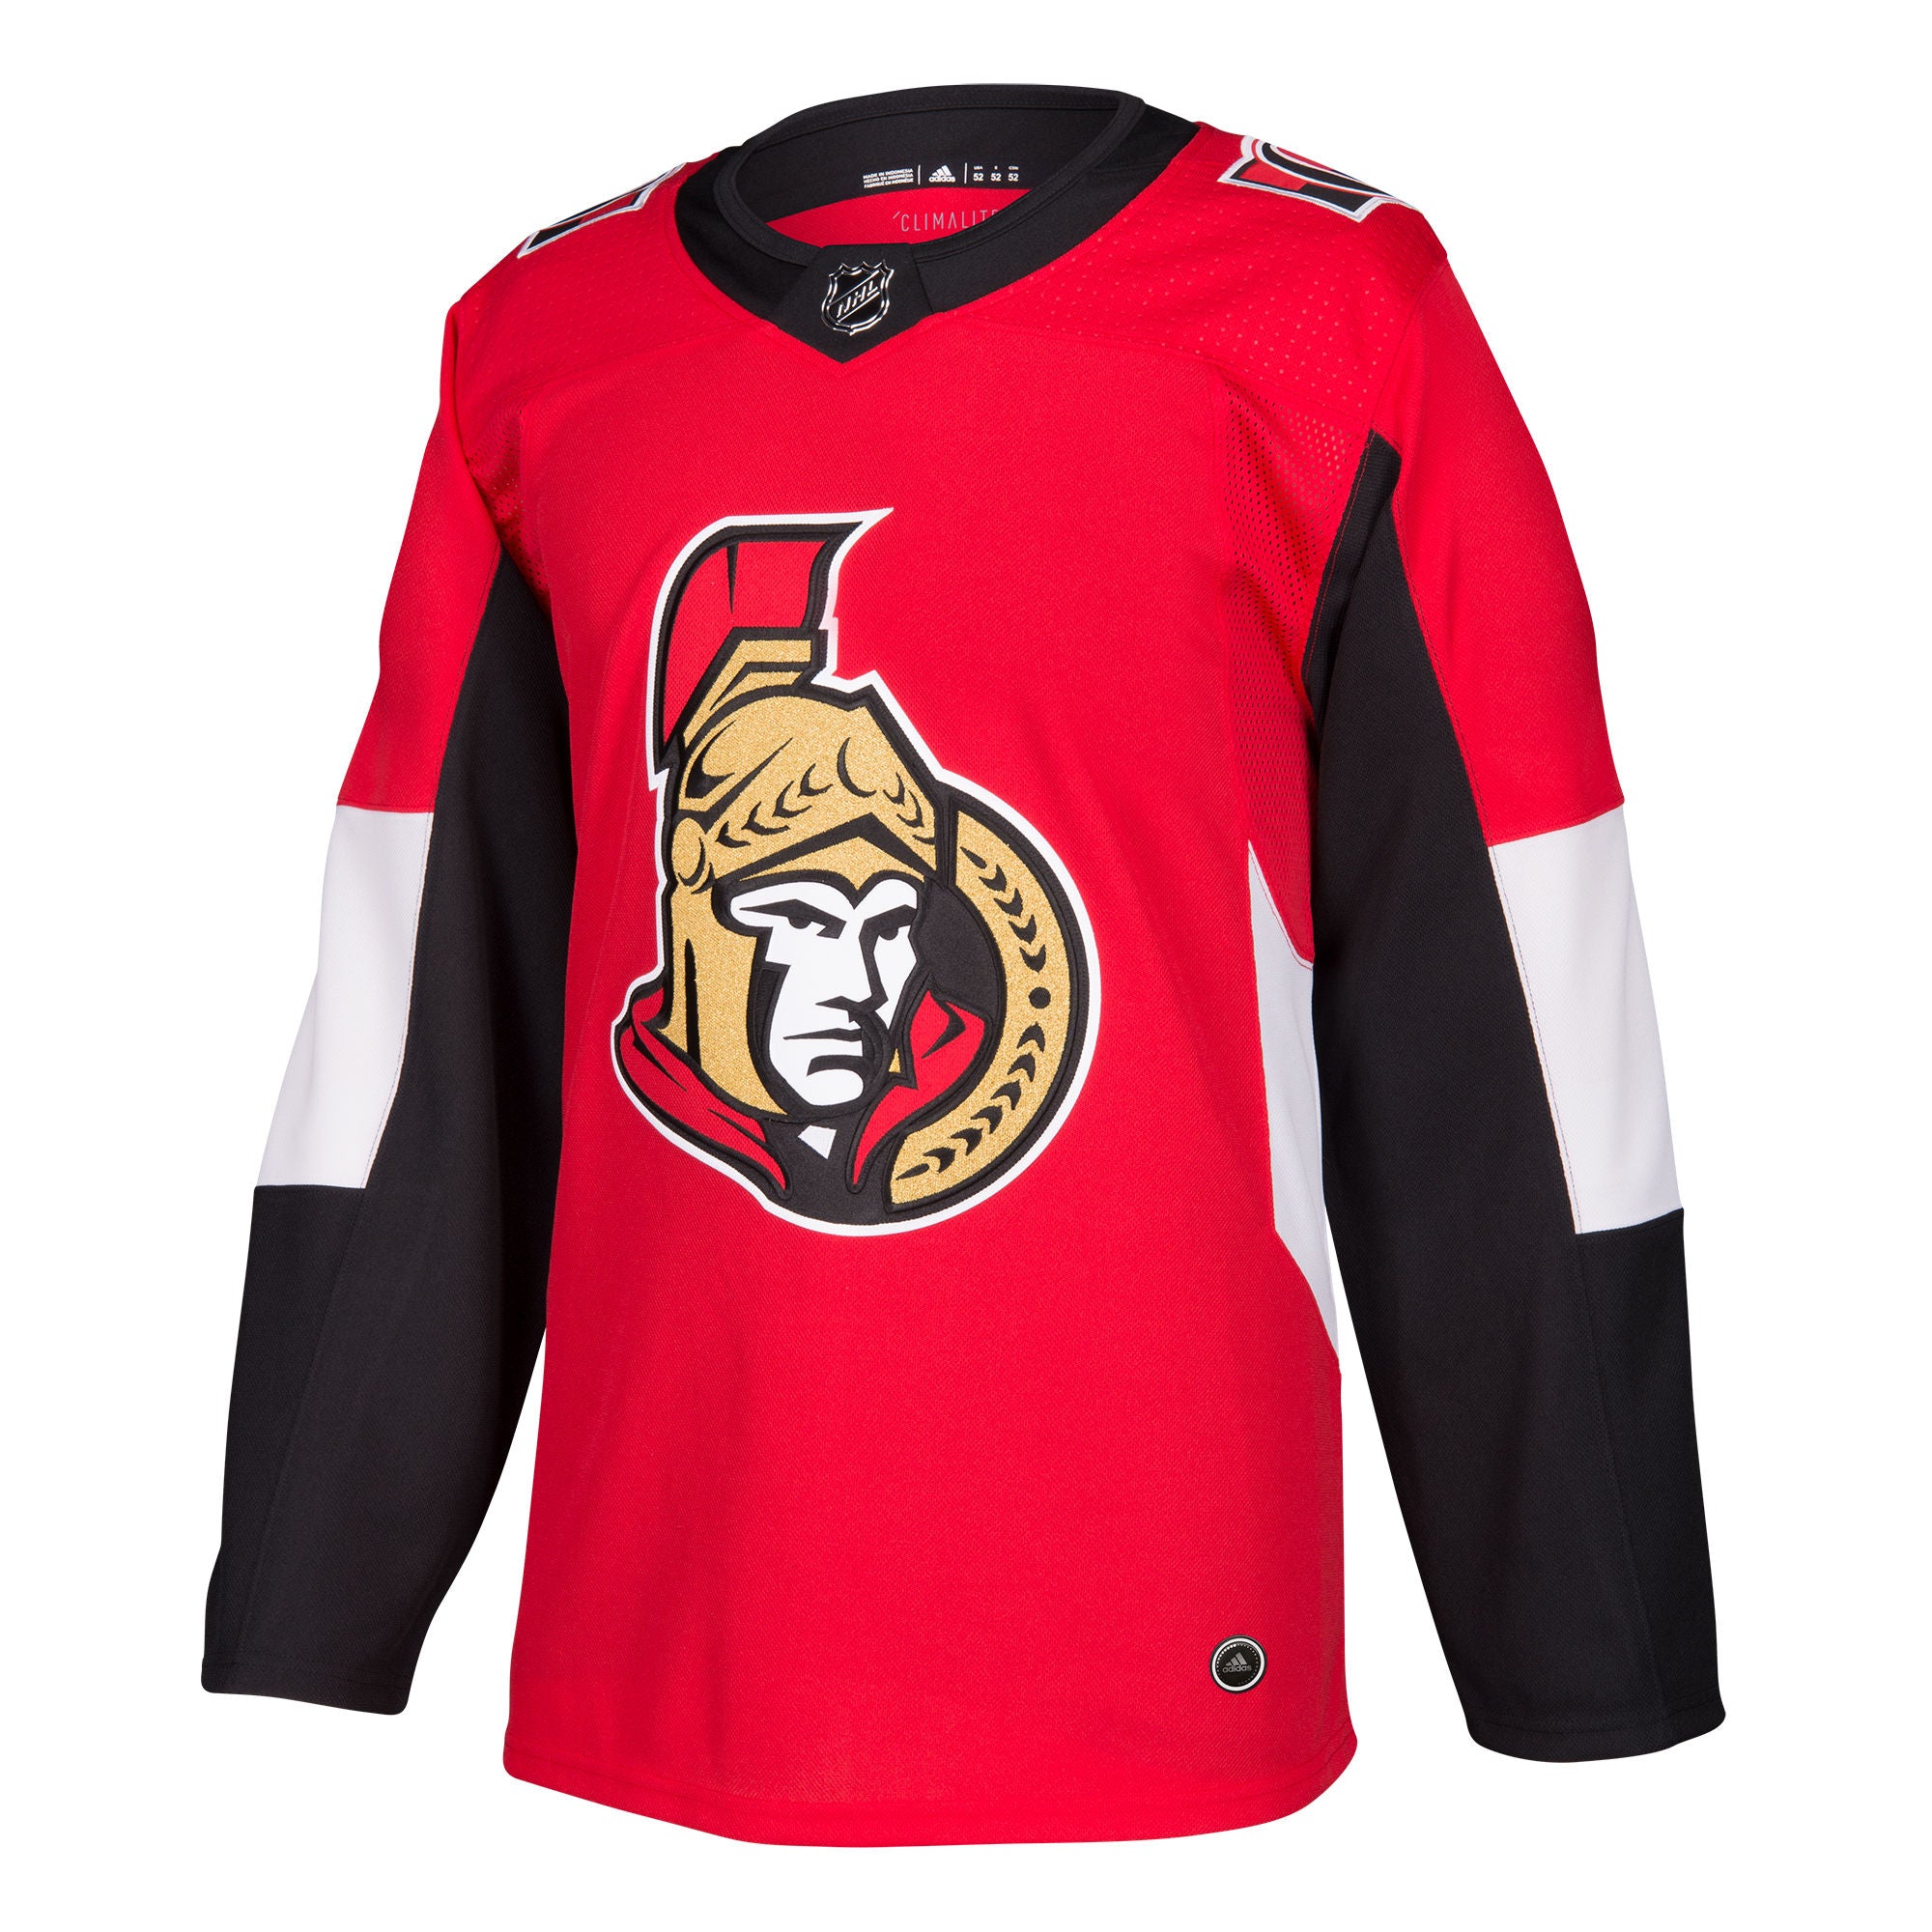 Ottawa Senators NHL Authentic Pro Home 